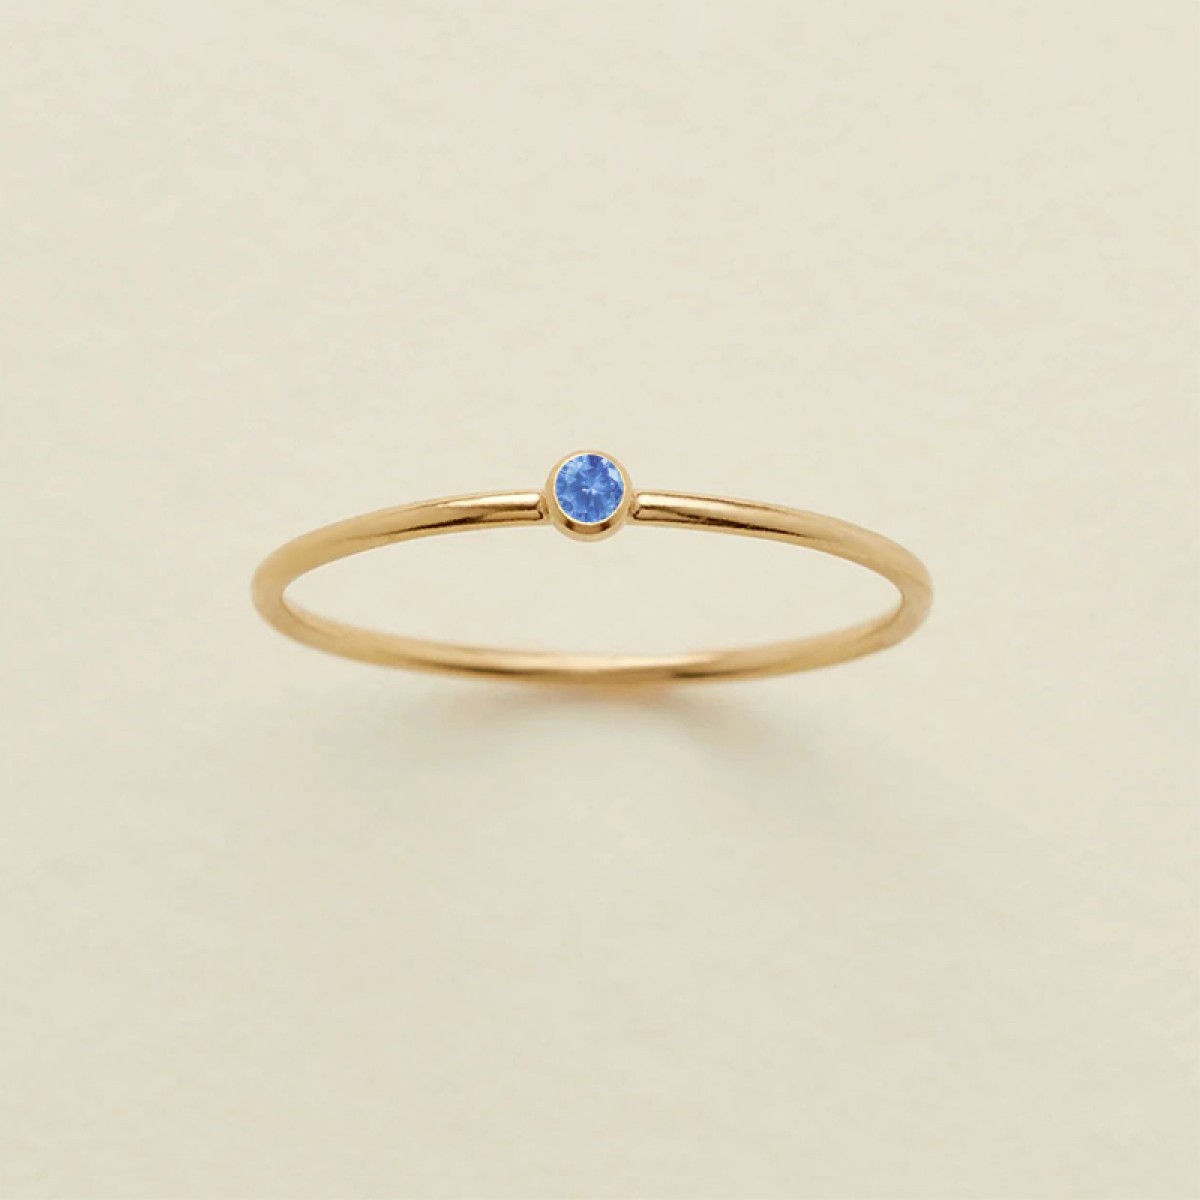 Anoa Ring Geburtsstein Birthstone Monat März Light Sapphire Blau Gold